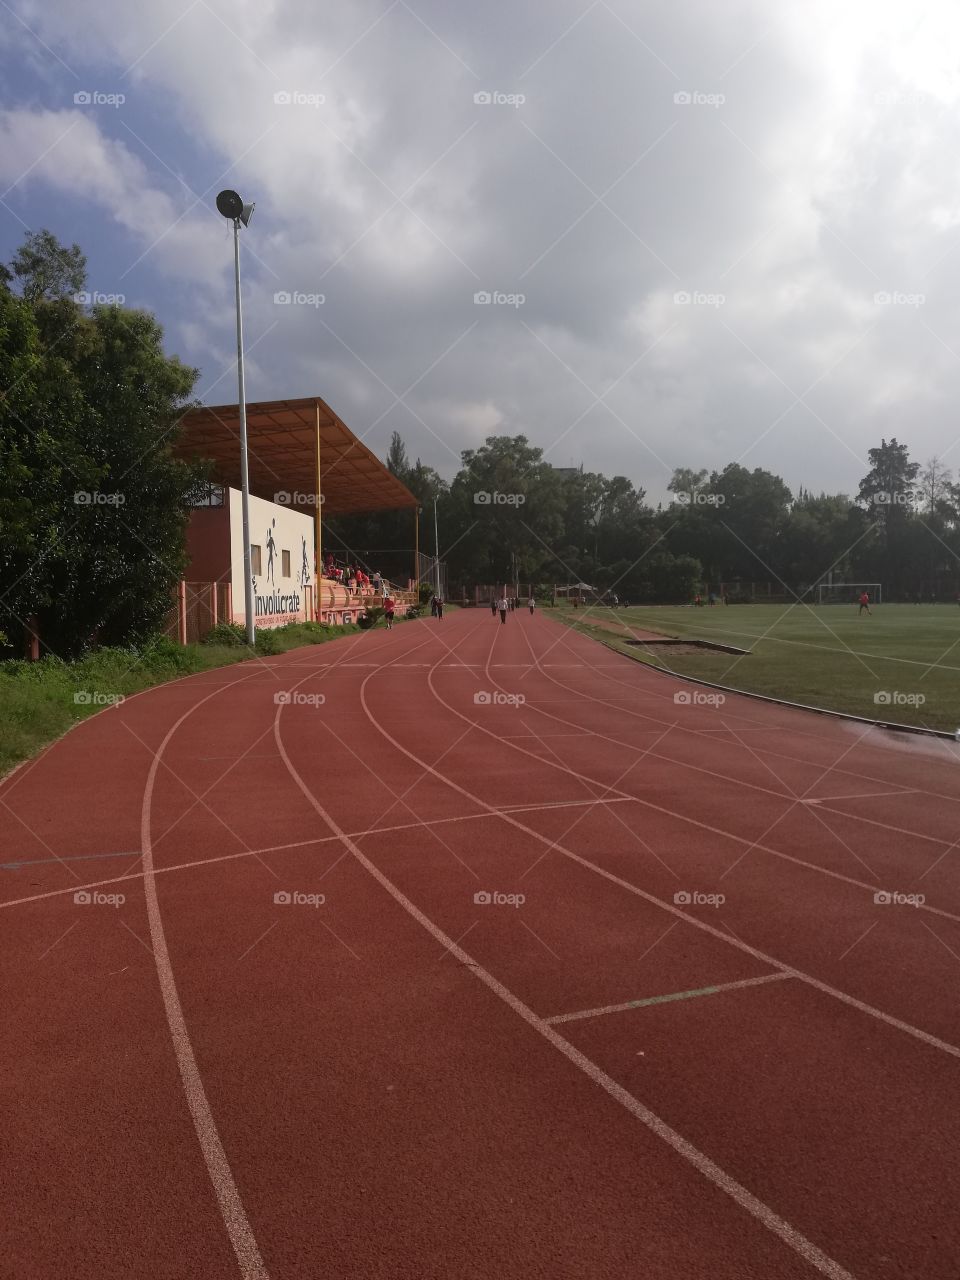 Esta es la pista de atletismo con sus 8 carriles lista y en buenas condiciones para practicar el atletismo.